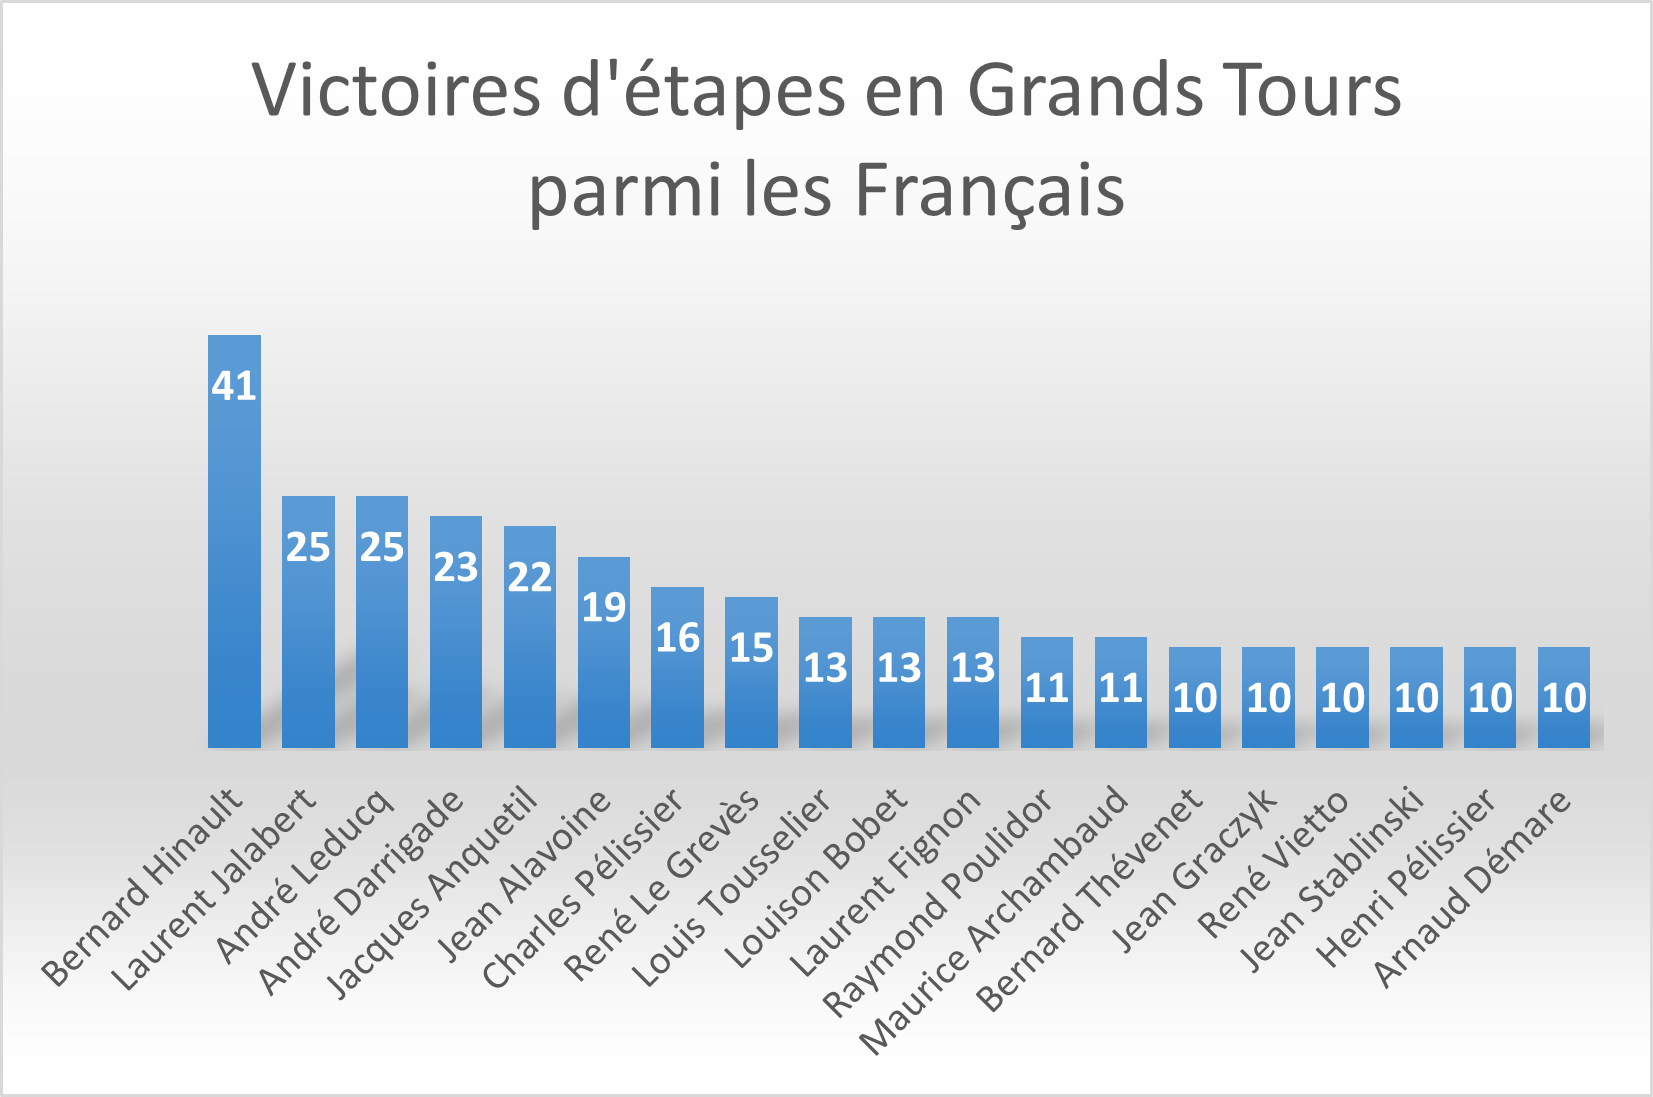 Victoires d'étapes en Grands Tours parmi les coureurs français